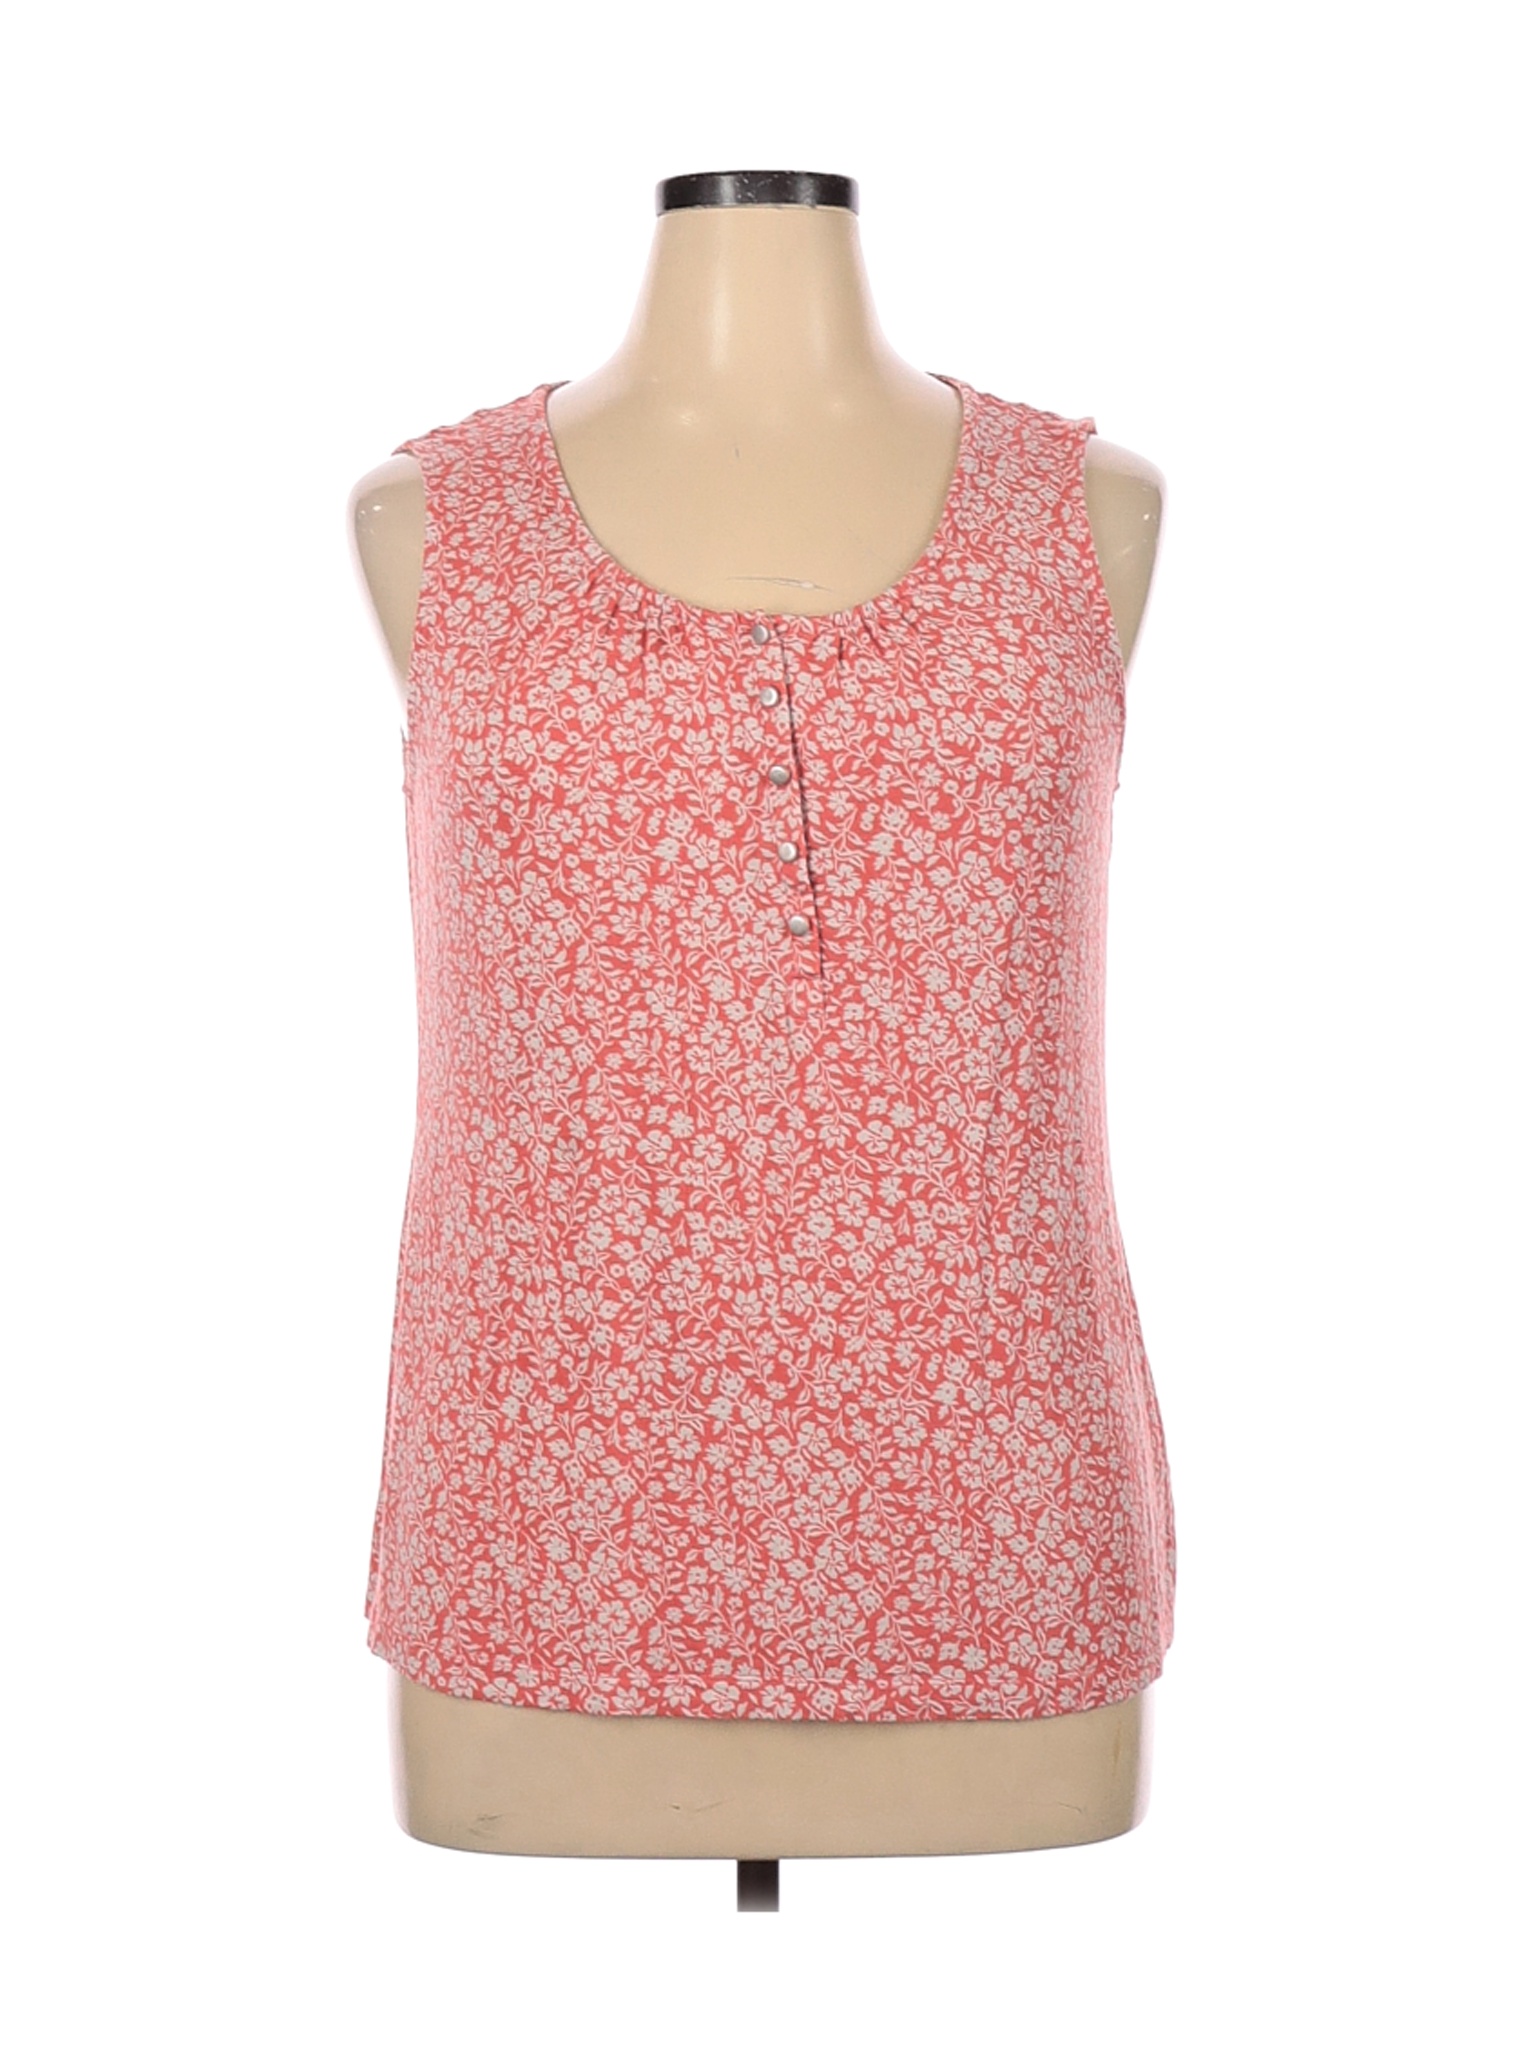 Croft & Barrow Women Pink Sleeveless Top XL | eBay